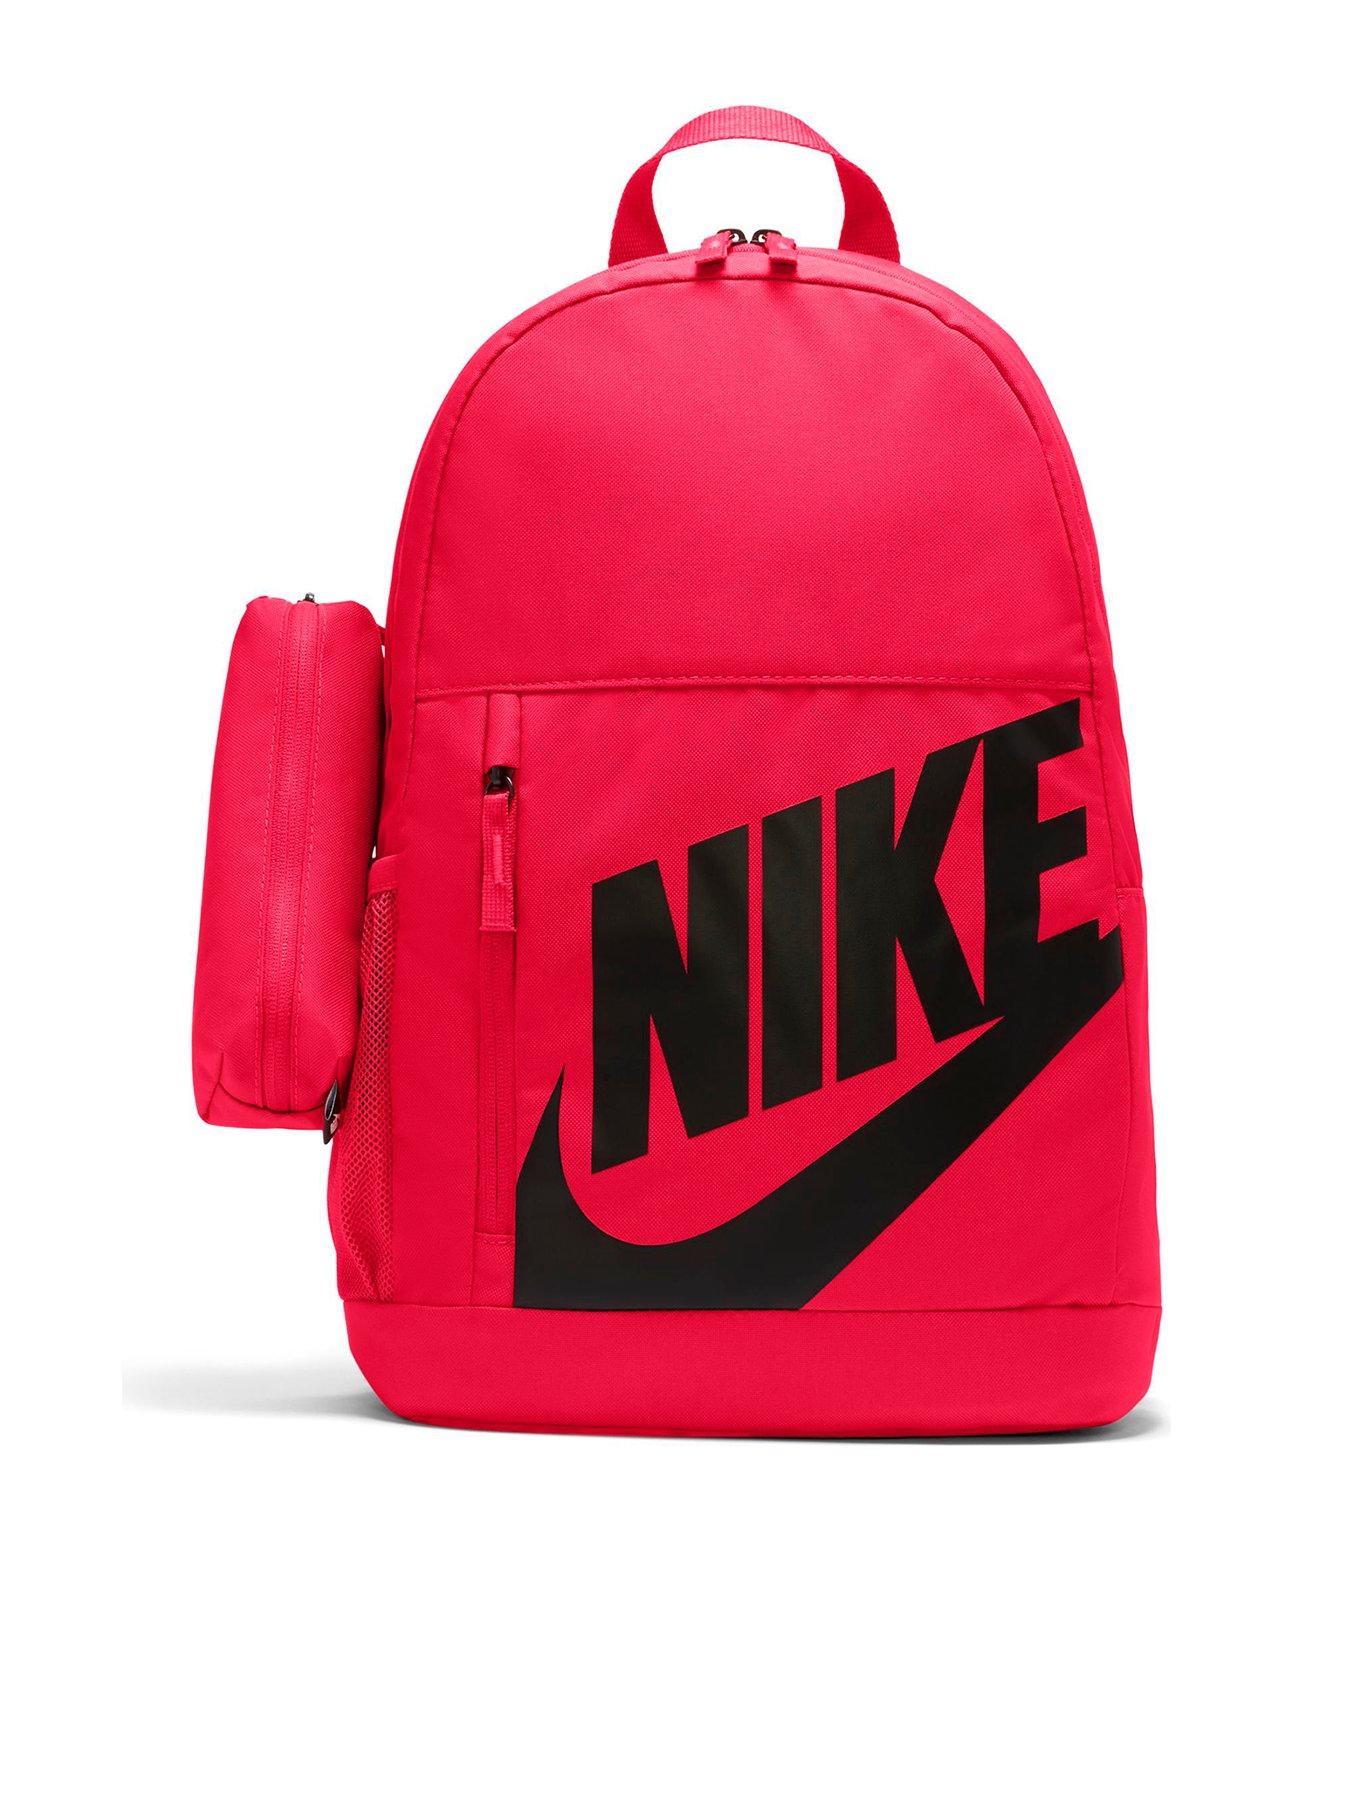 Kids Older Unisex Elemental Backpack - Red